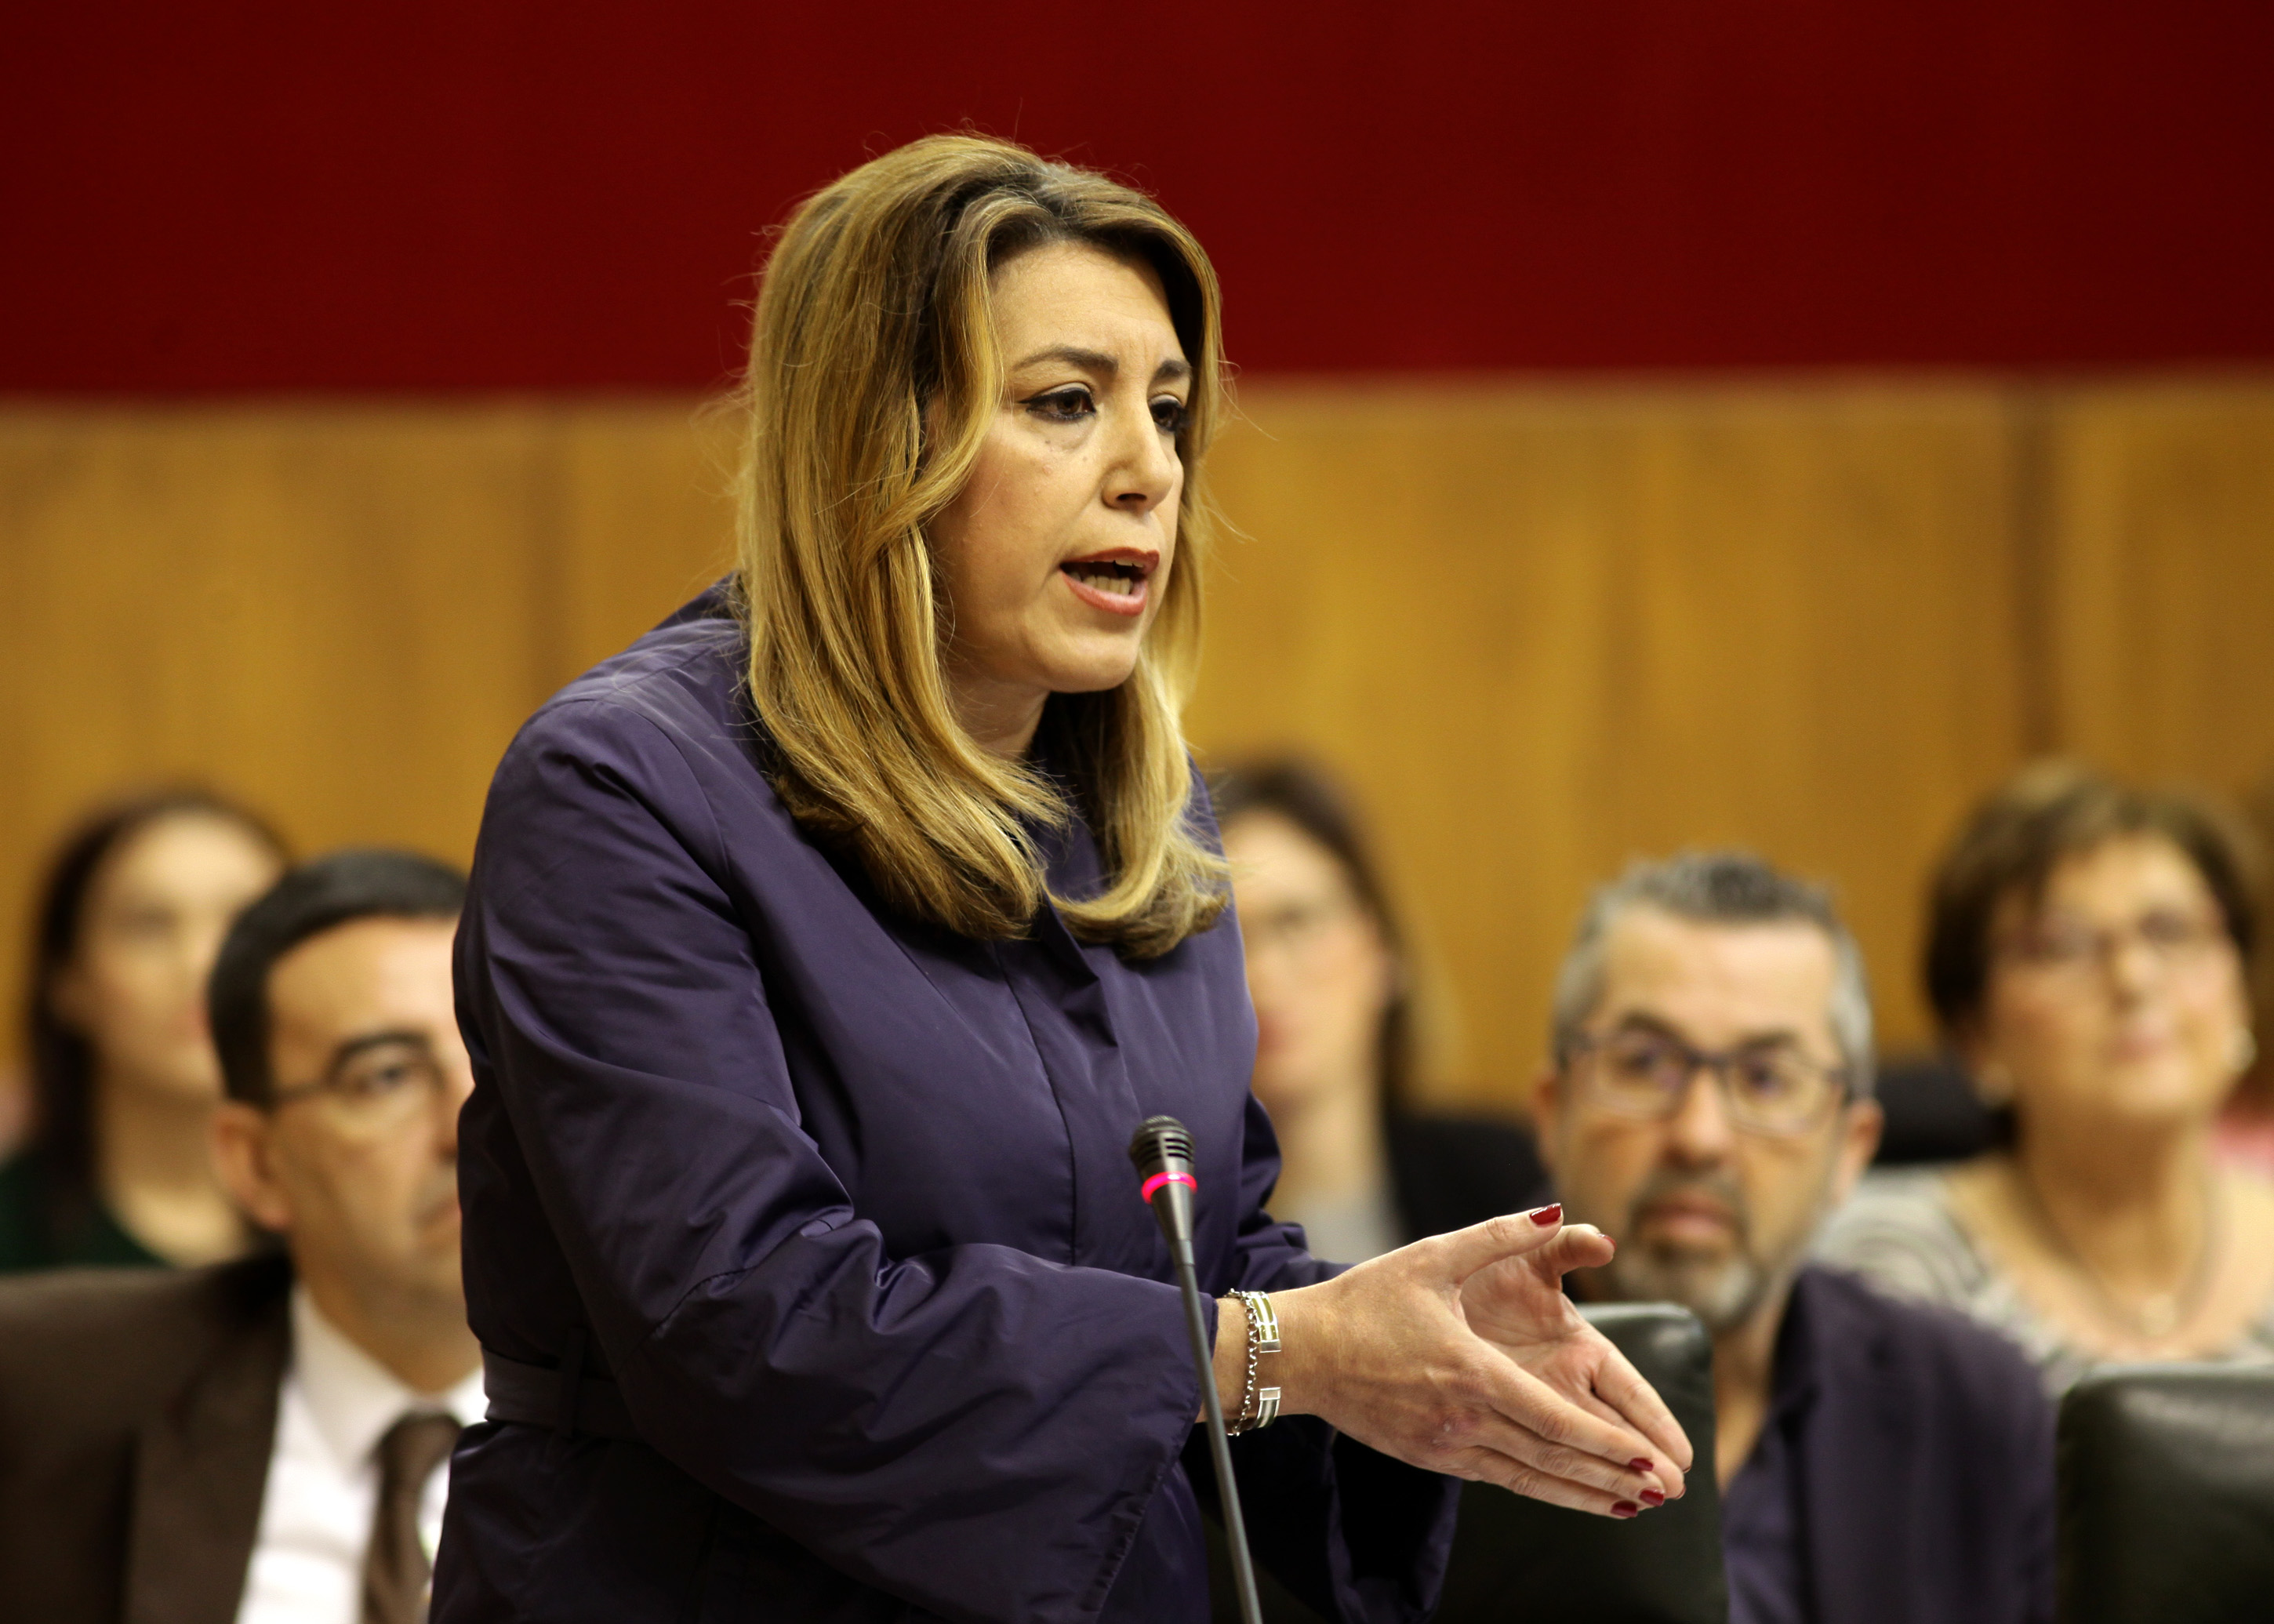 La presidenta de la Junta de Andaluca, Susana Daz, durante su intervencin en la sesin de control